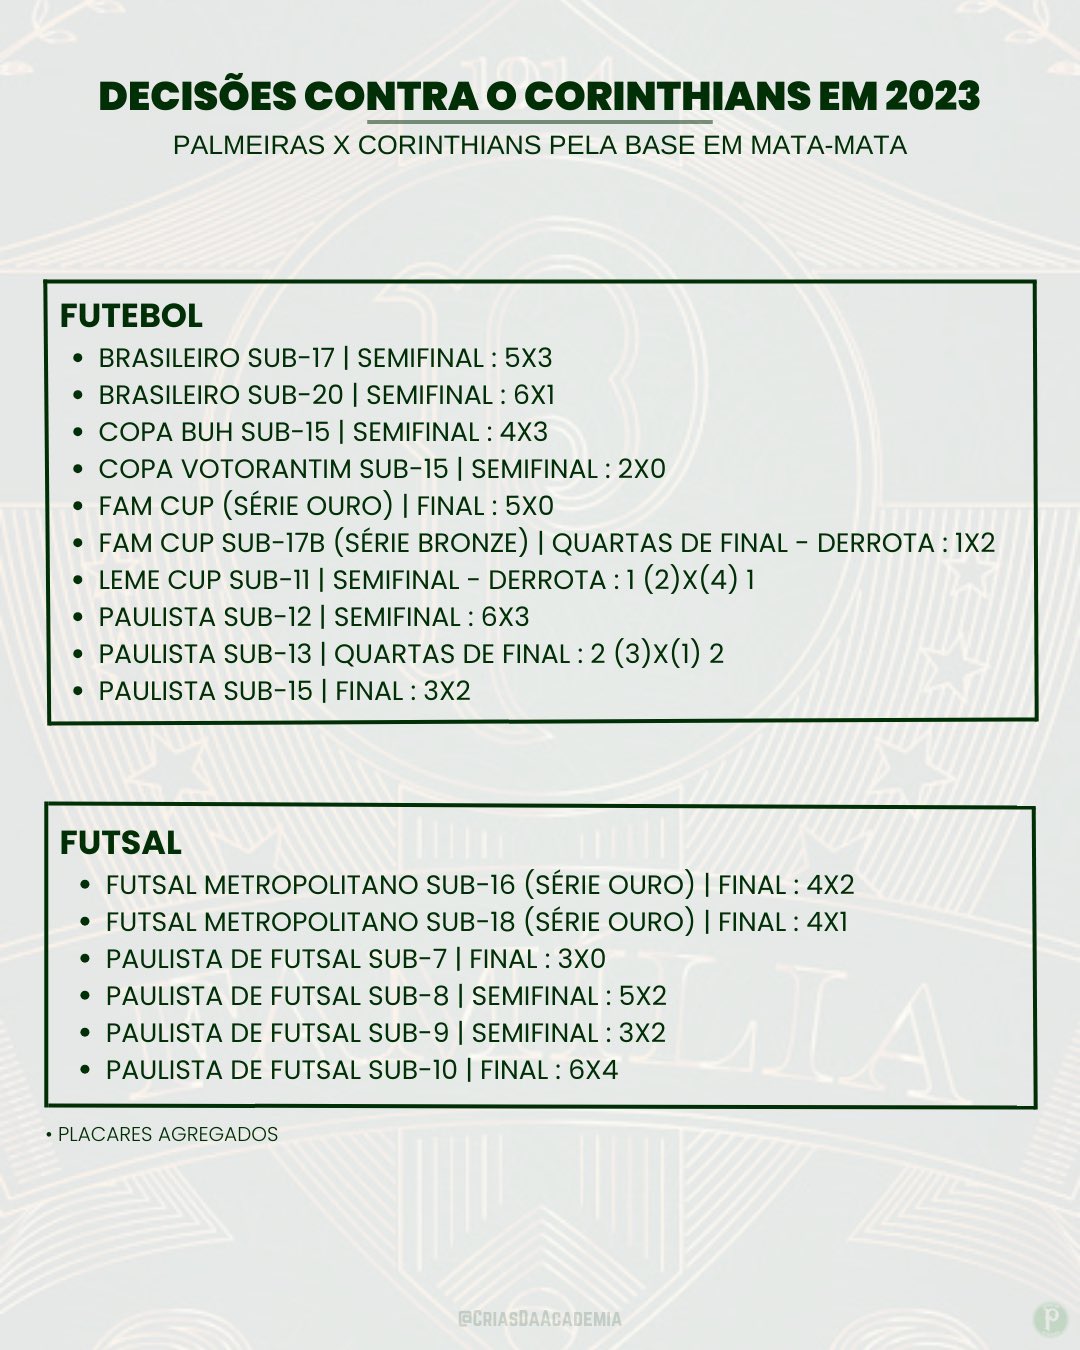 Palmeiras x Corinthians, AO VIVO, Campeonato Brasileiro - Sub 20 - 2023